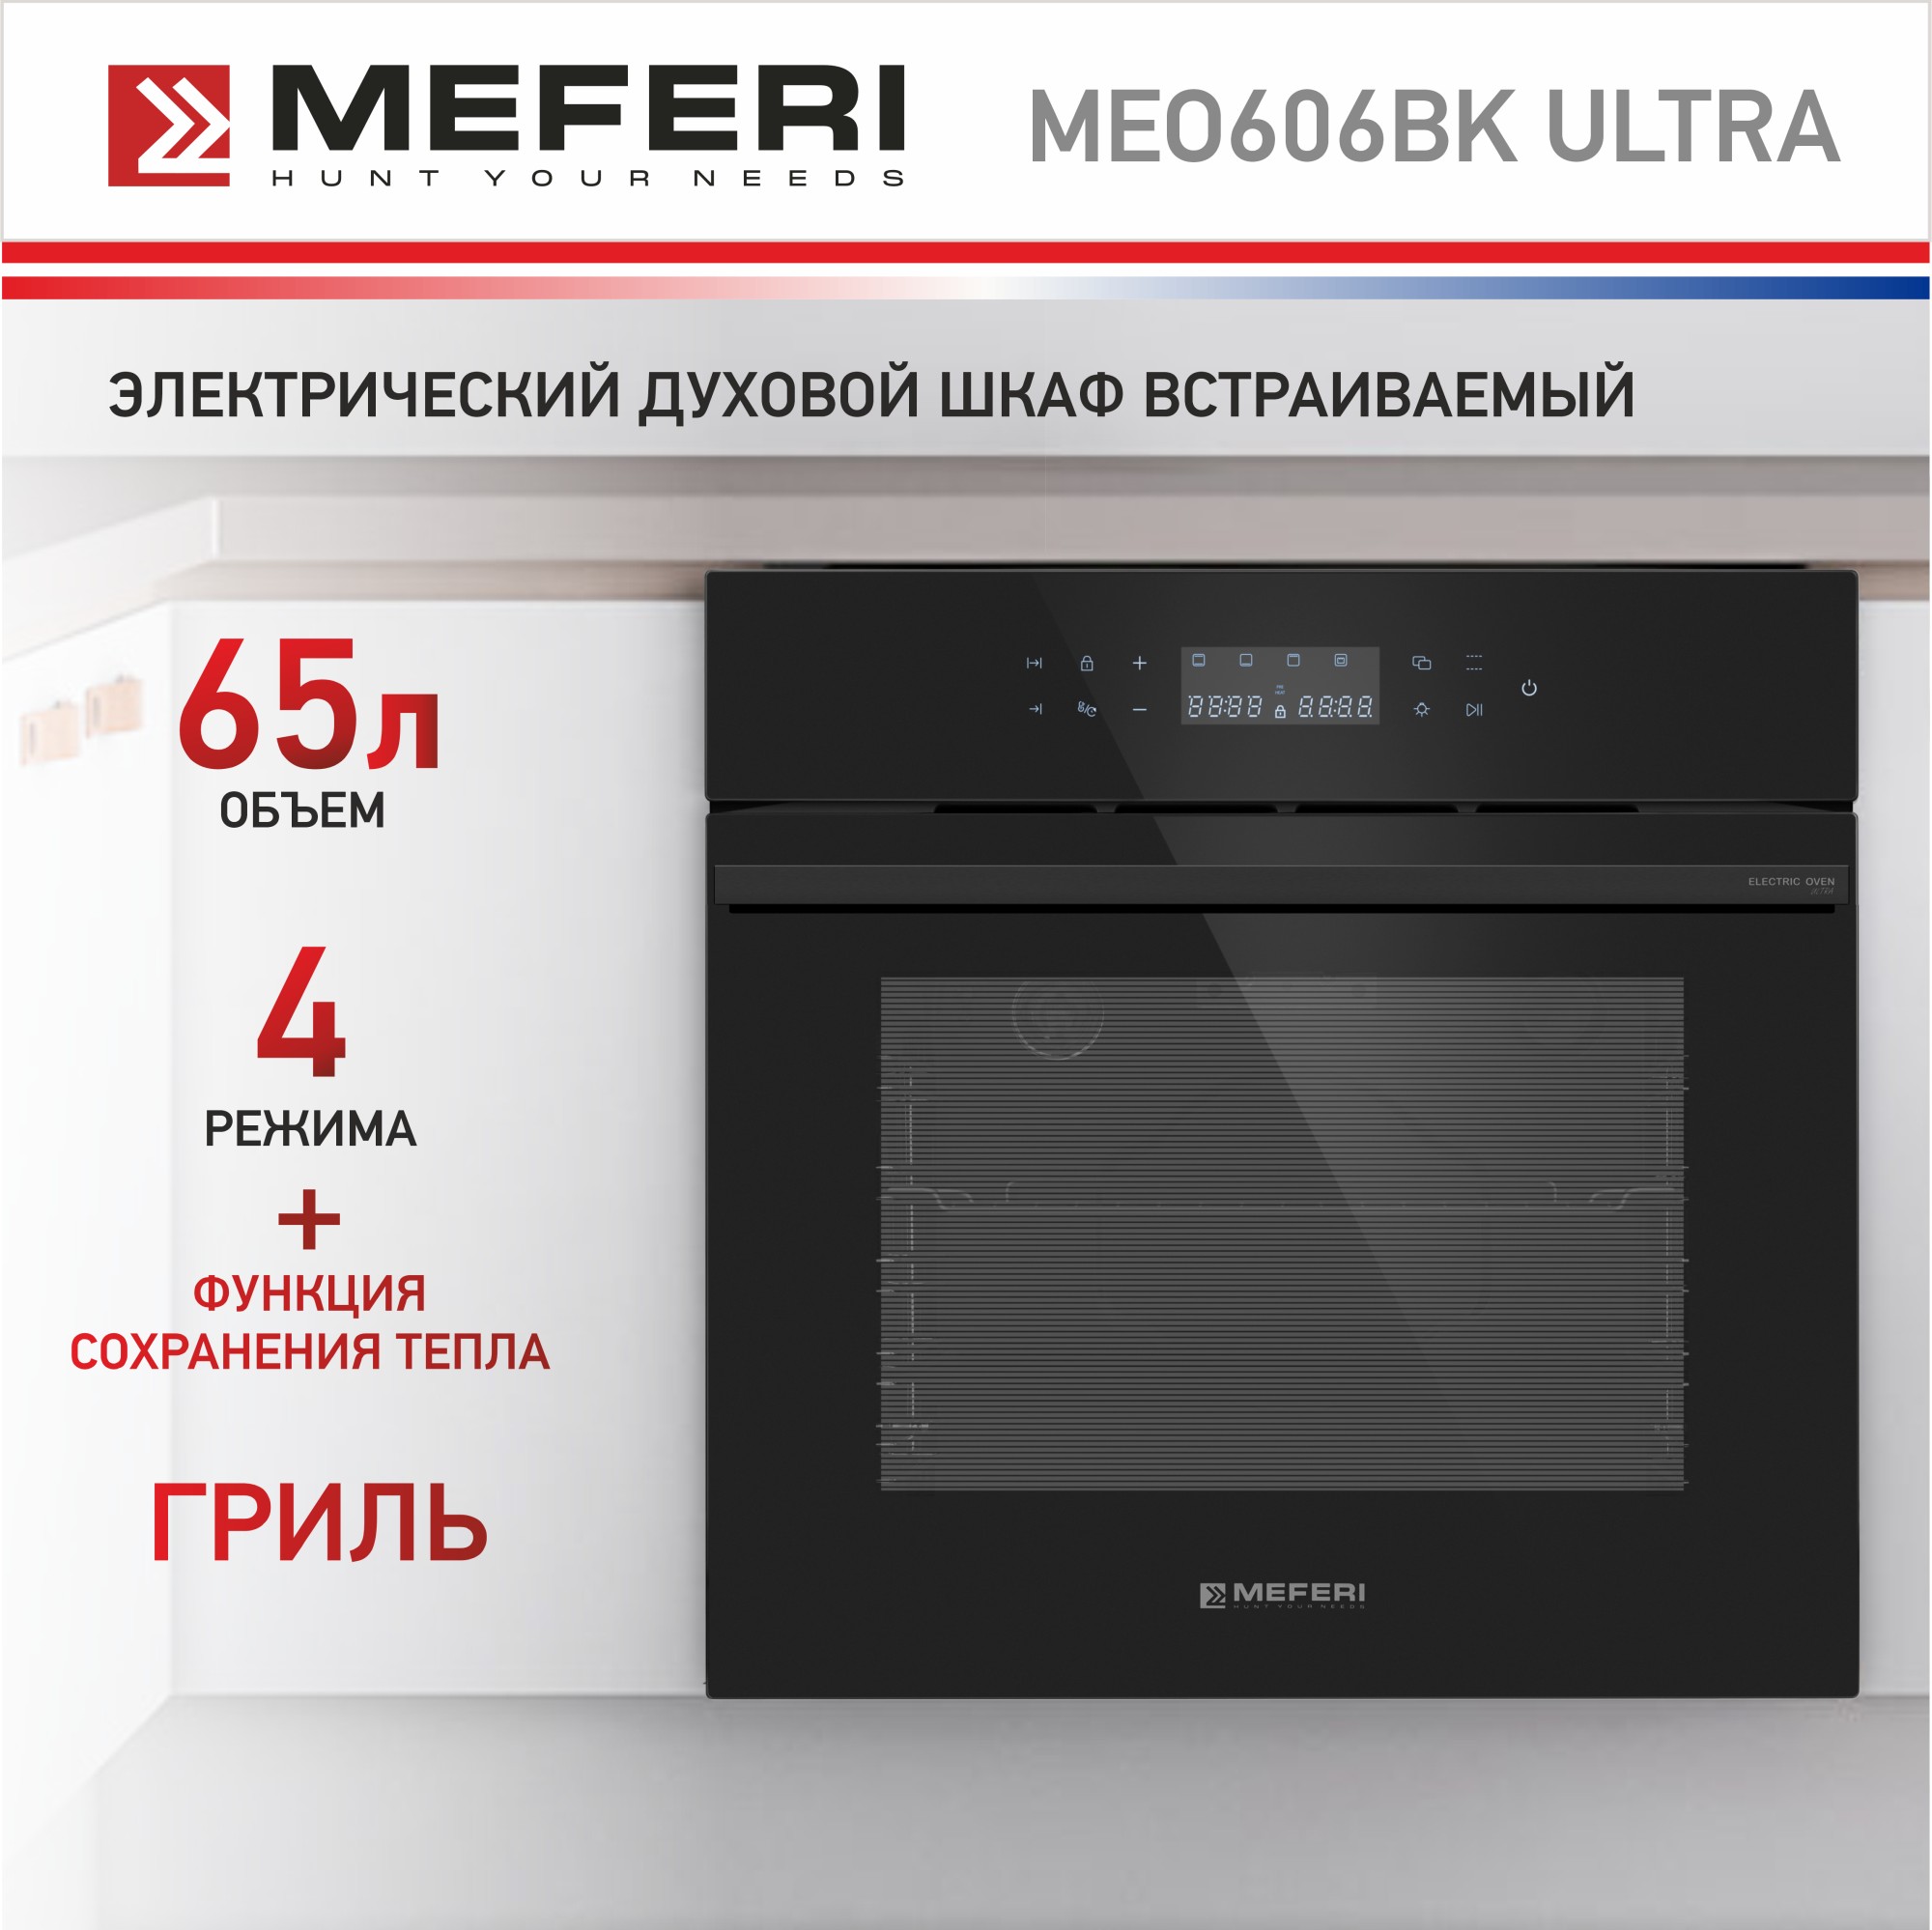 Электрический духовой шкаф MEFERI MEO606BK ULTRA комплект спутникового телевидения триколор тв европа ultra hd gs b528